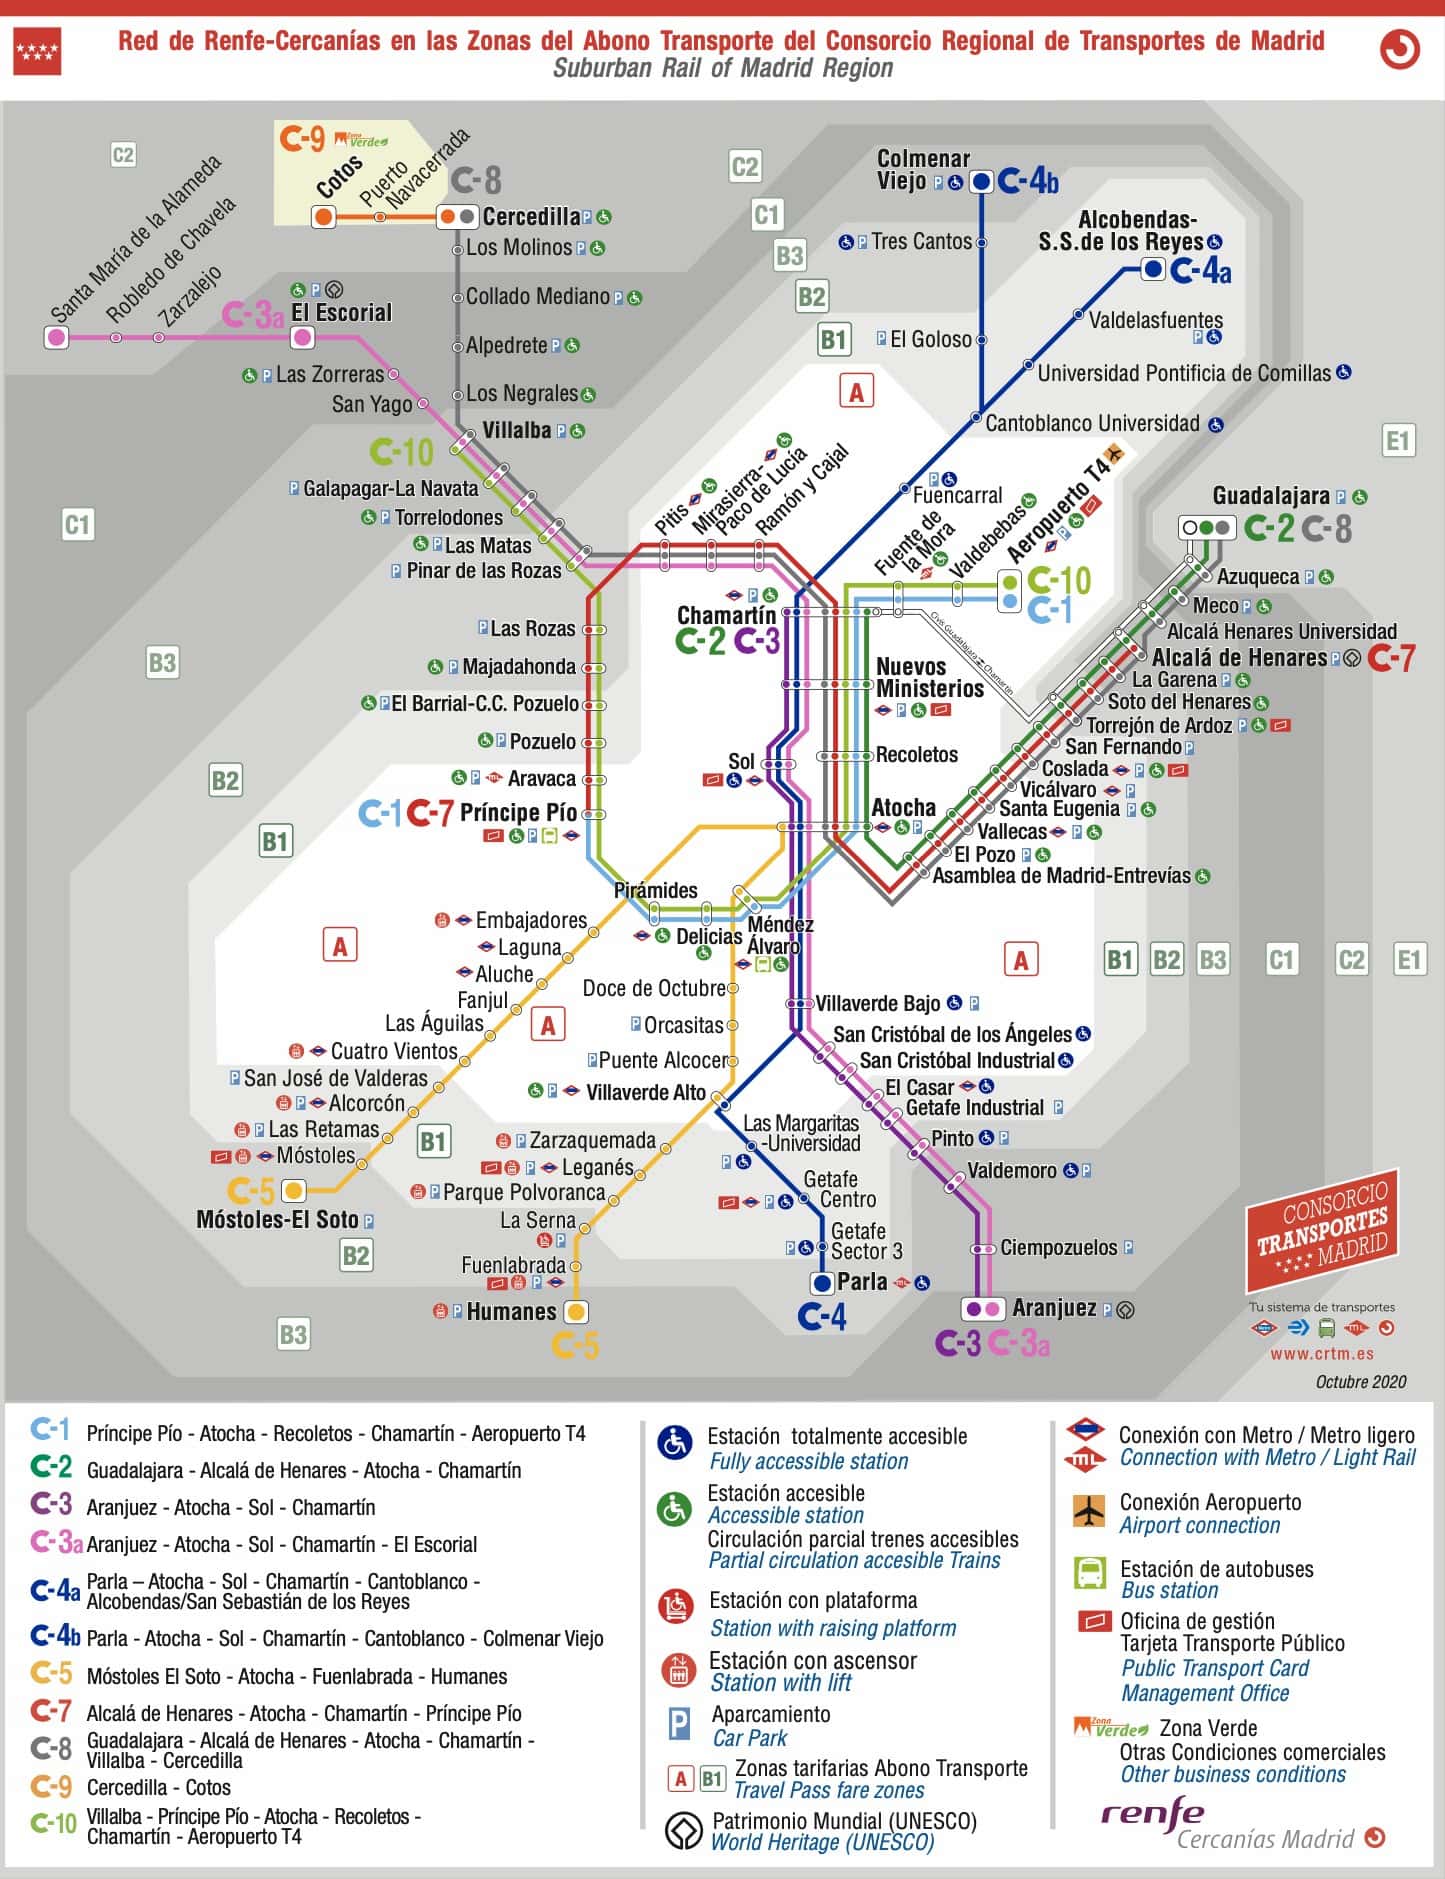 Mapa de la red de Renfe-Cercanías Madrid